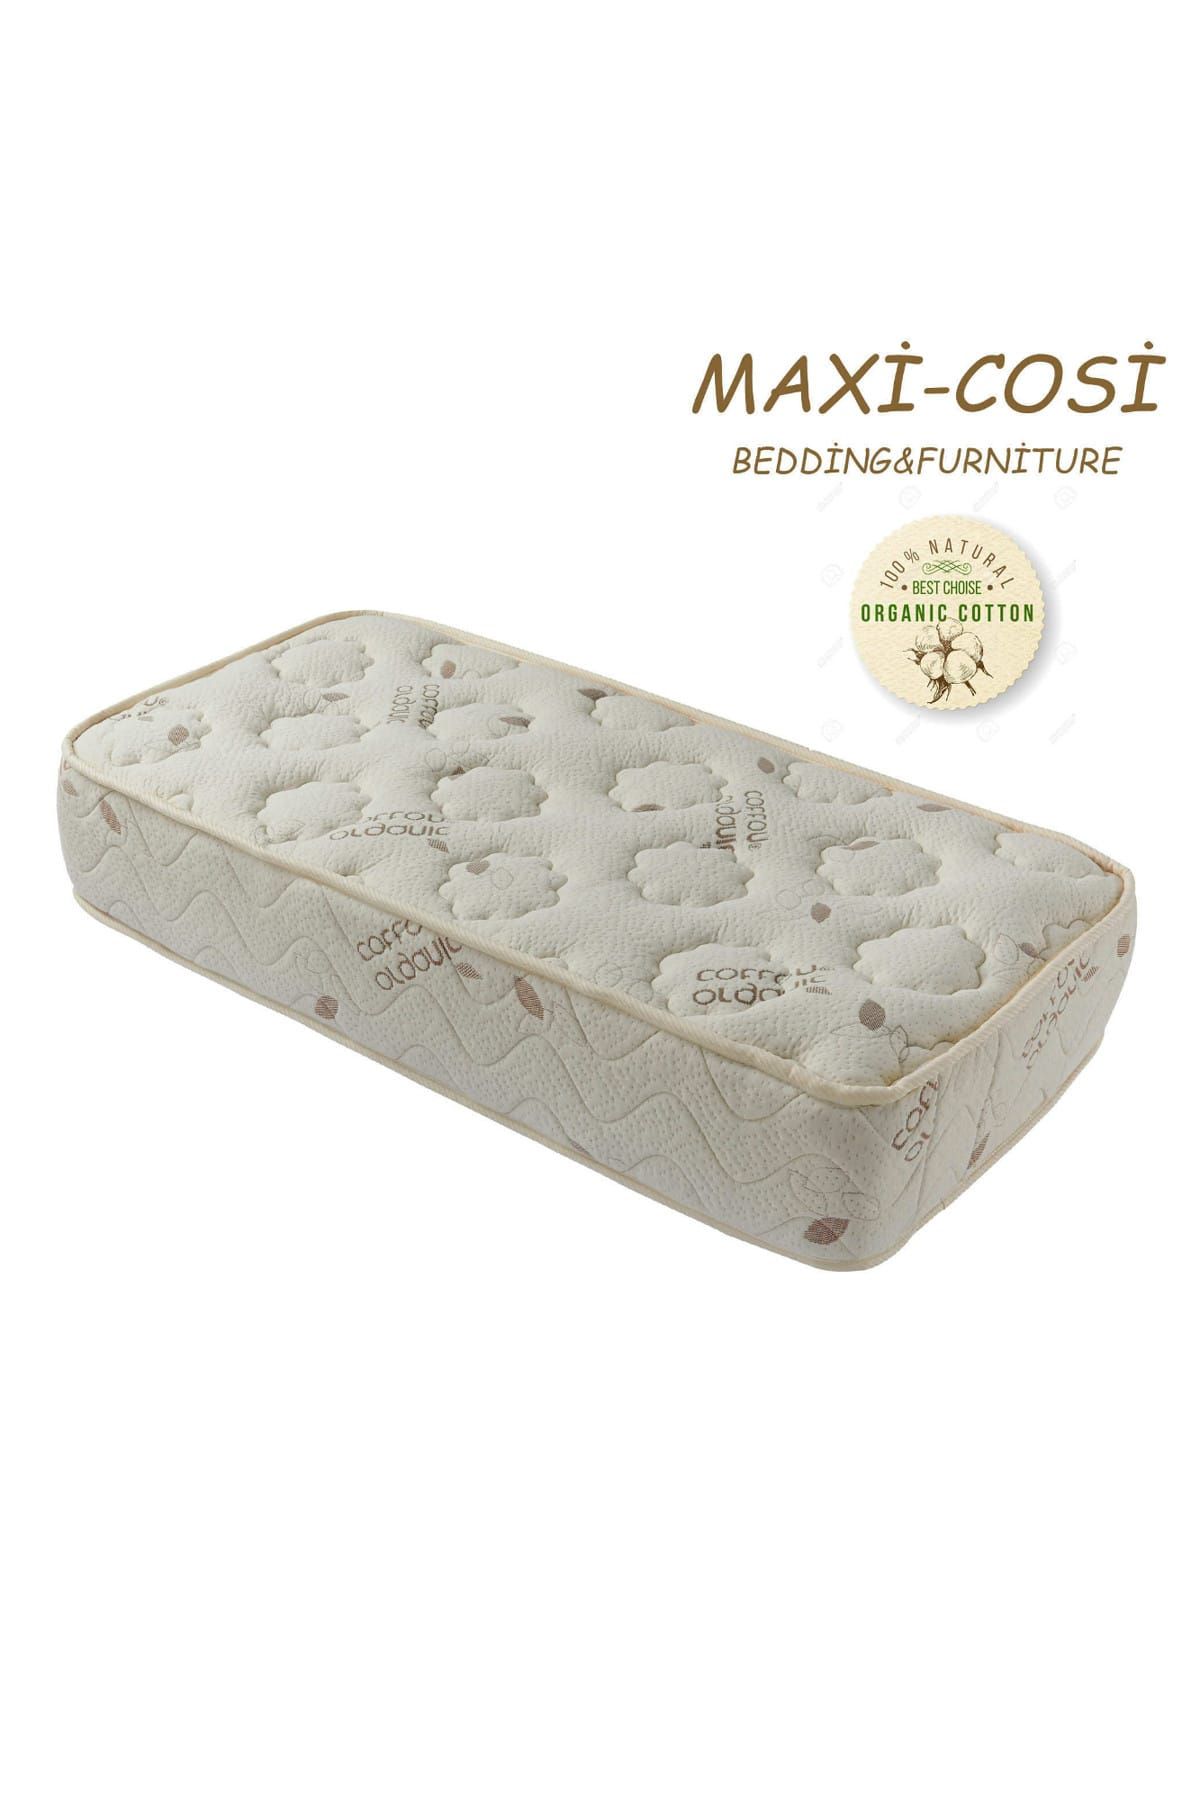 Maxi-Cosi Maxi-Cosi Organik Cotton 100x200 Cm ortopedik Yaylı Yatak